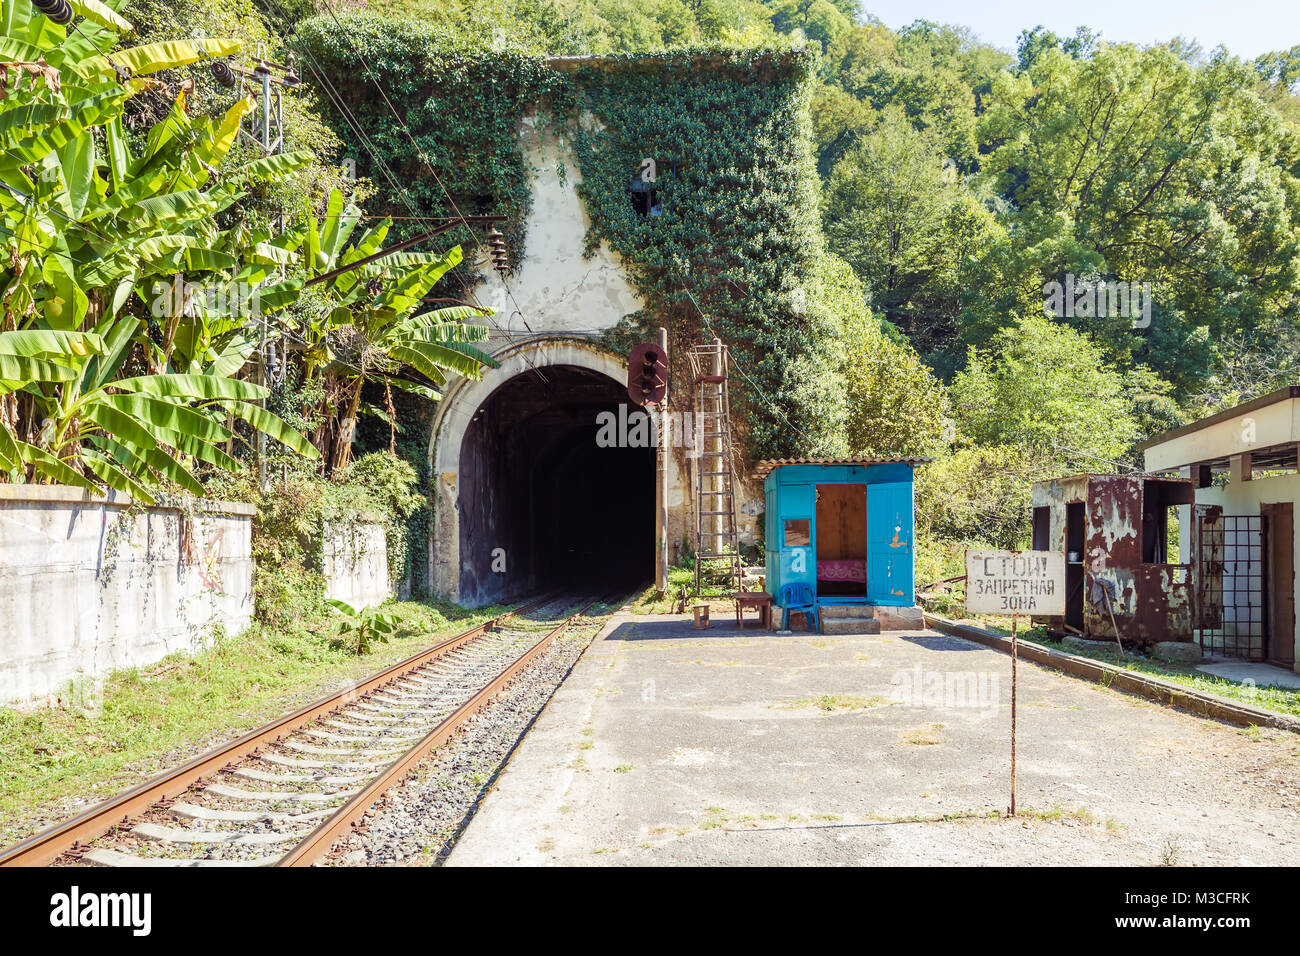 Neue ATHOS, Abchasien, Georgien, vom 19. SEPTEMBER 2017: Eisenbahntunnel der Berge und des Zeichens top! Verbotene Zone", in der Nähe des Bahnhof Psirtskha Stockfoto